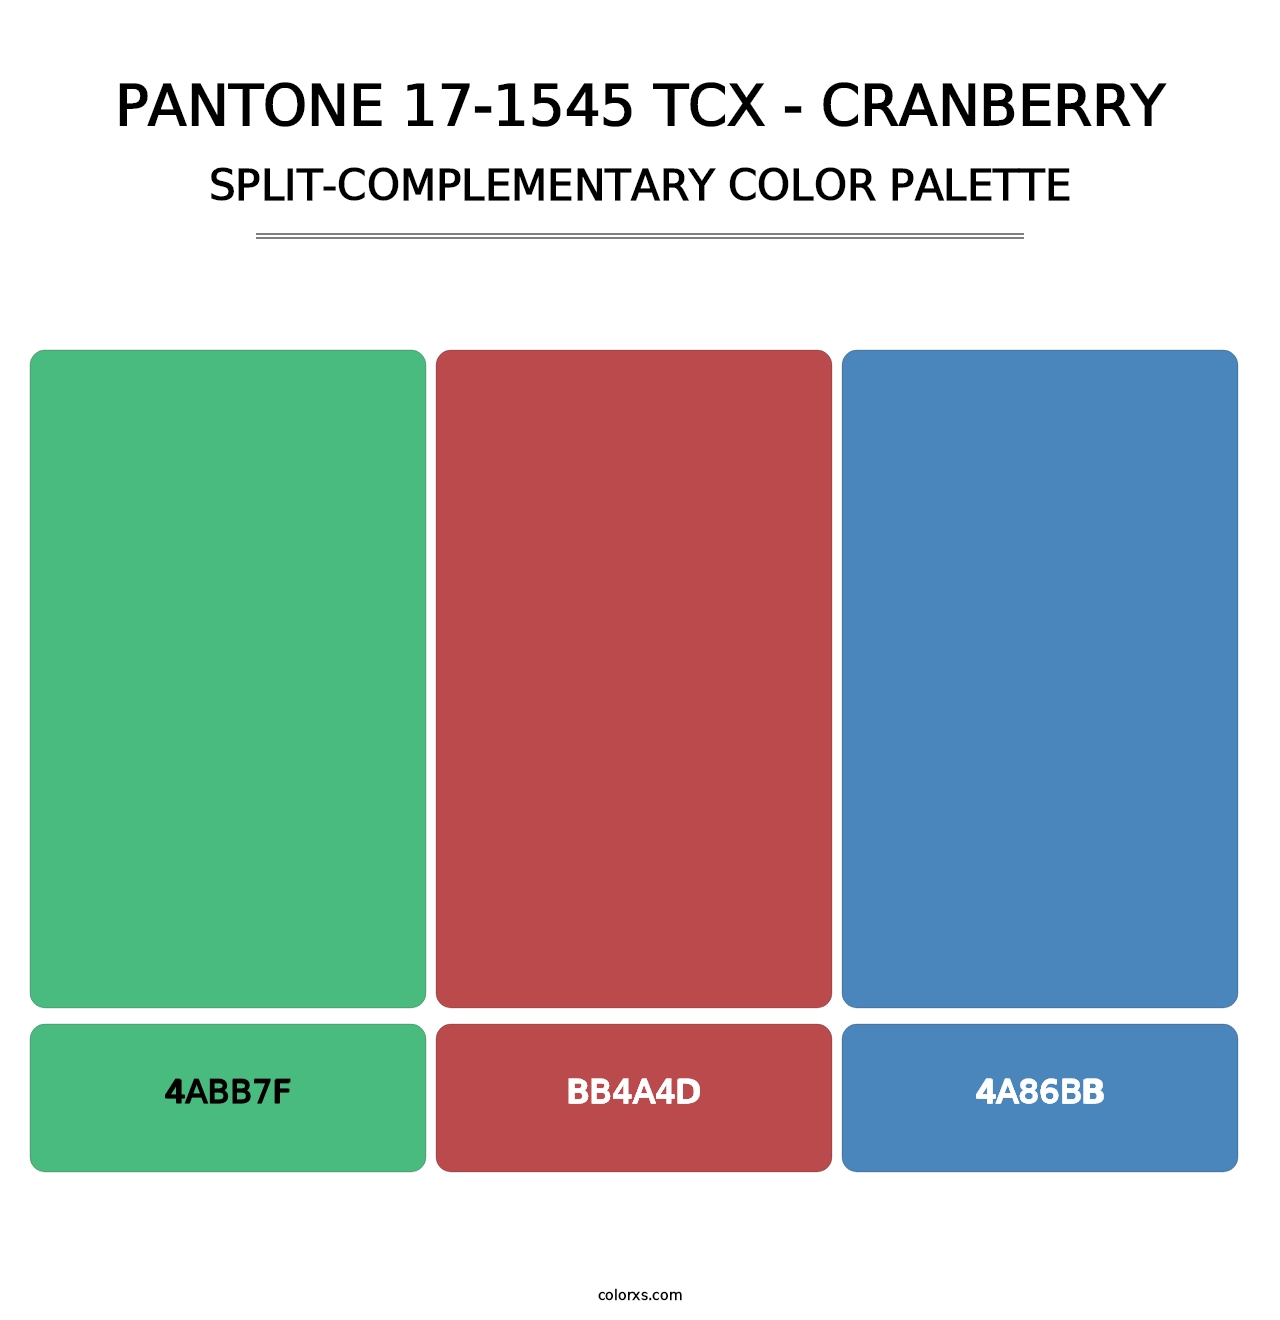 PANTONE 17-1545 TCX - Cranberry - Split-Complementary Color Palette